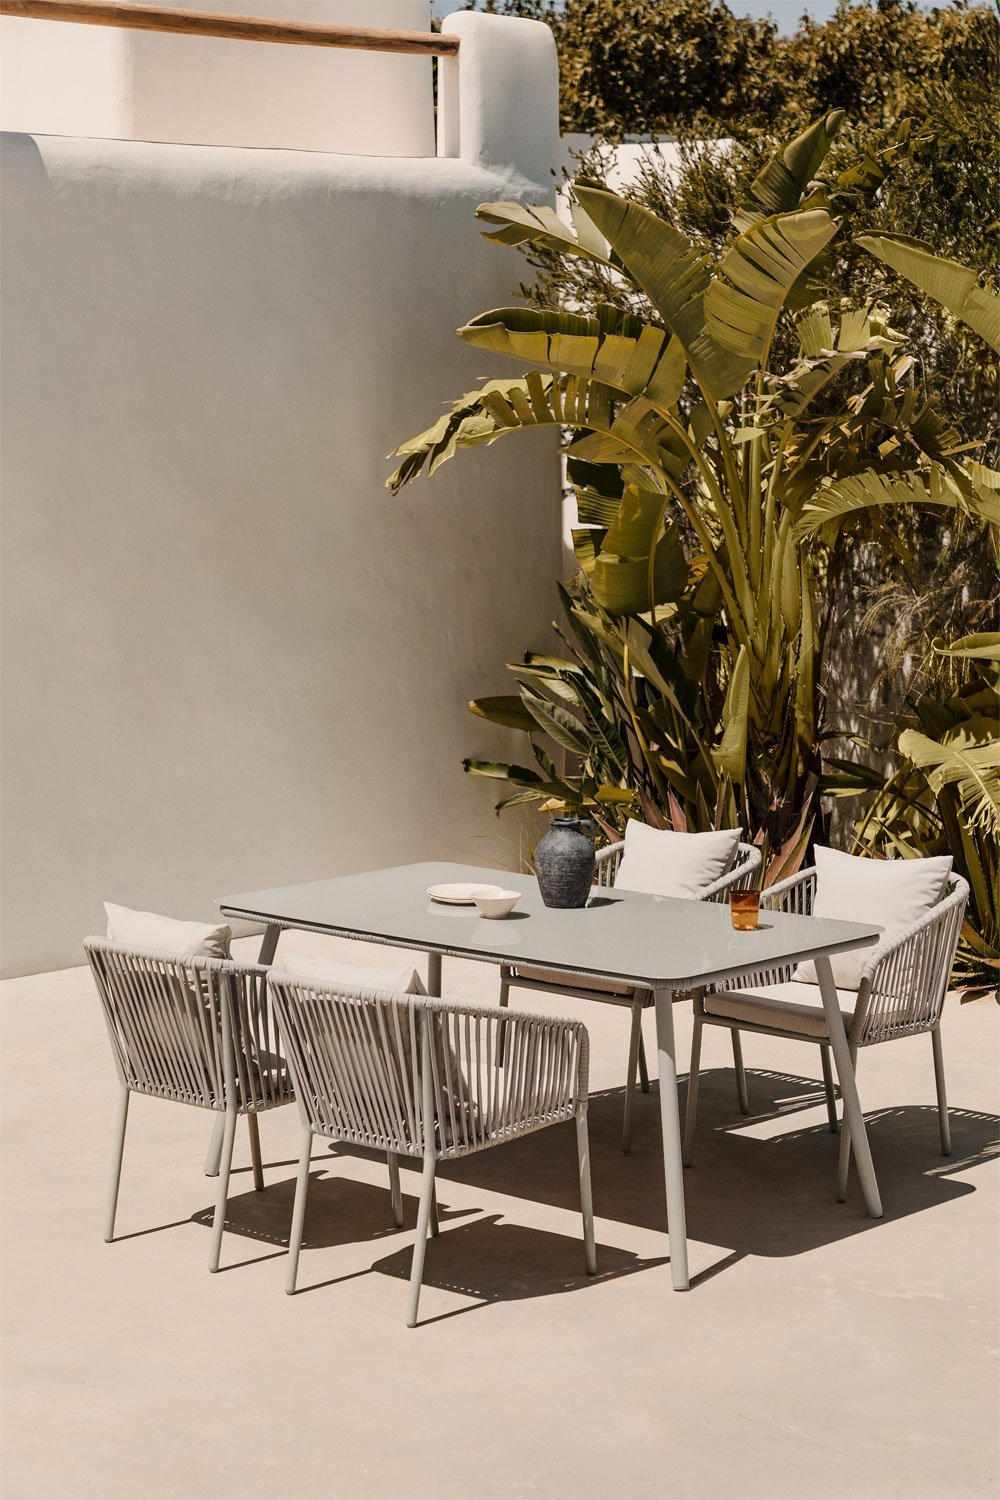 Tuinset met rechthoekige tafel (160x90 cm) en 4 stoelen Arhiza Supreme, galerij beeld 1